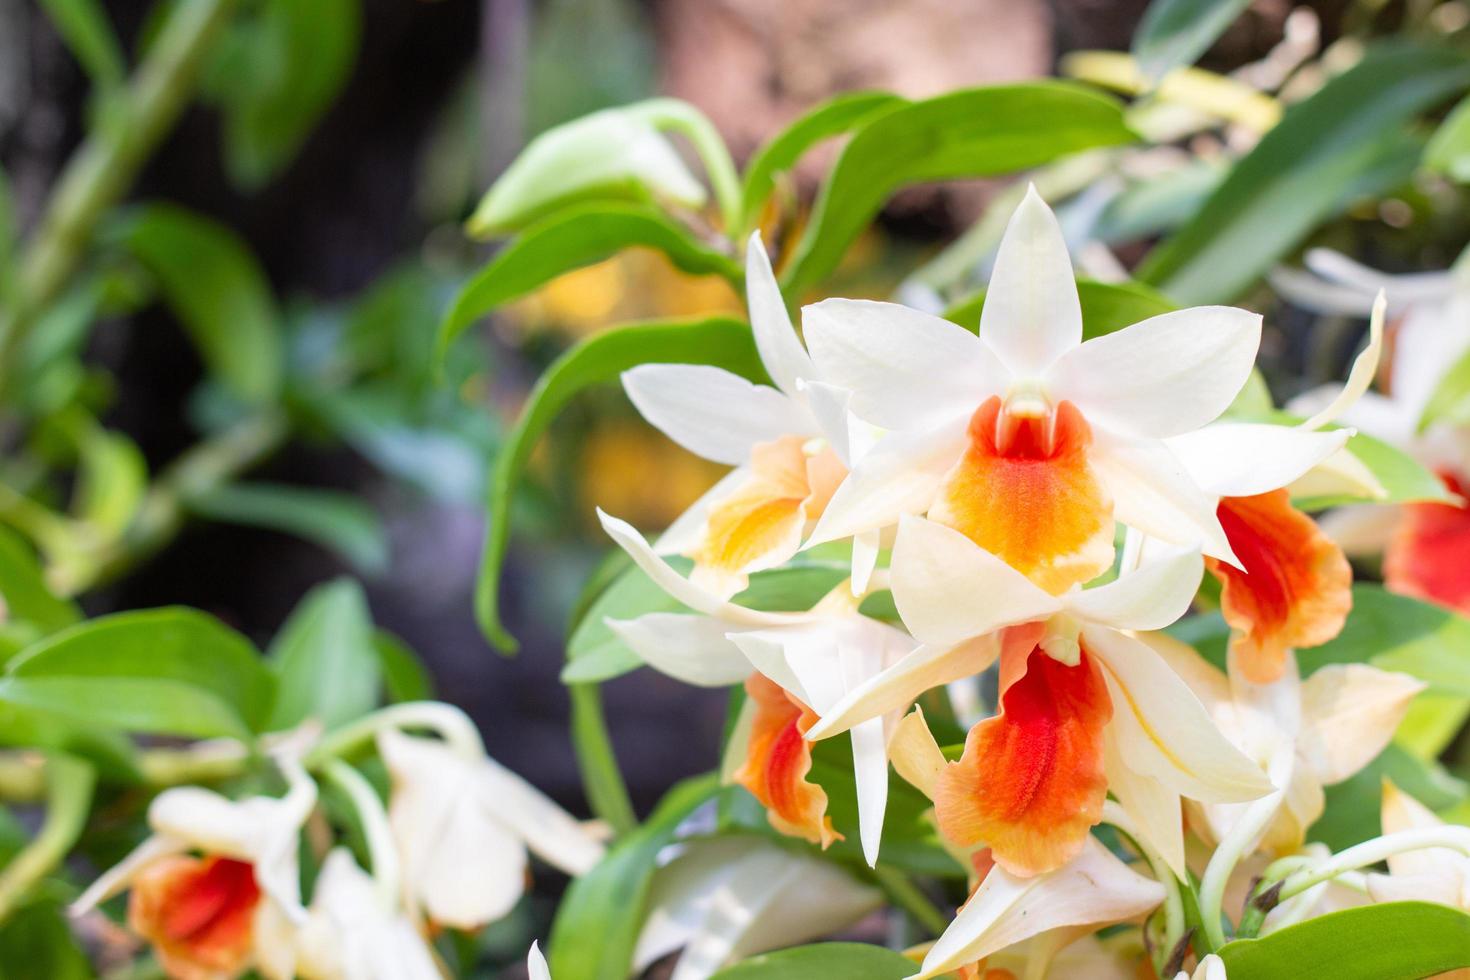 las orquídeas blancas y anaranjadas florecen en un fondo borroso de hojas y flores. flores de orquídeas de primavera tomadas en una exposición en tailandia durante el día. enfoque selectivo. foto